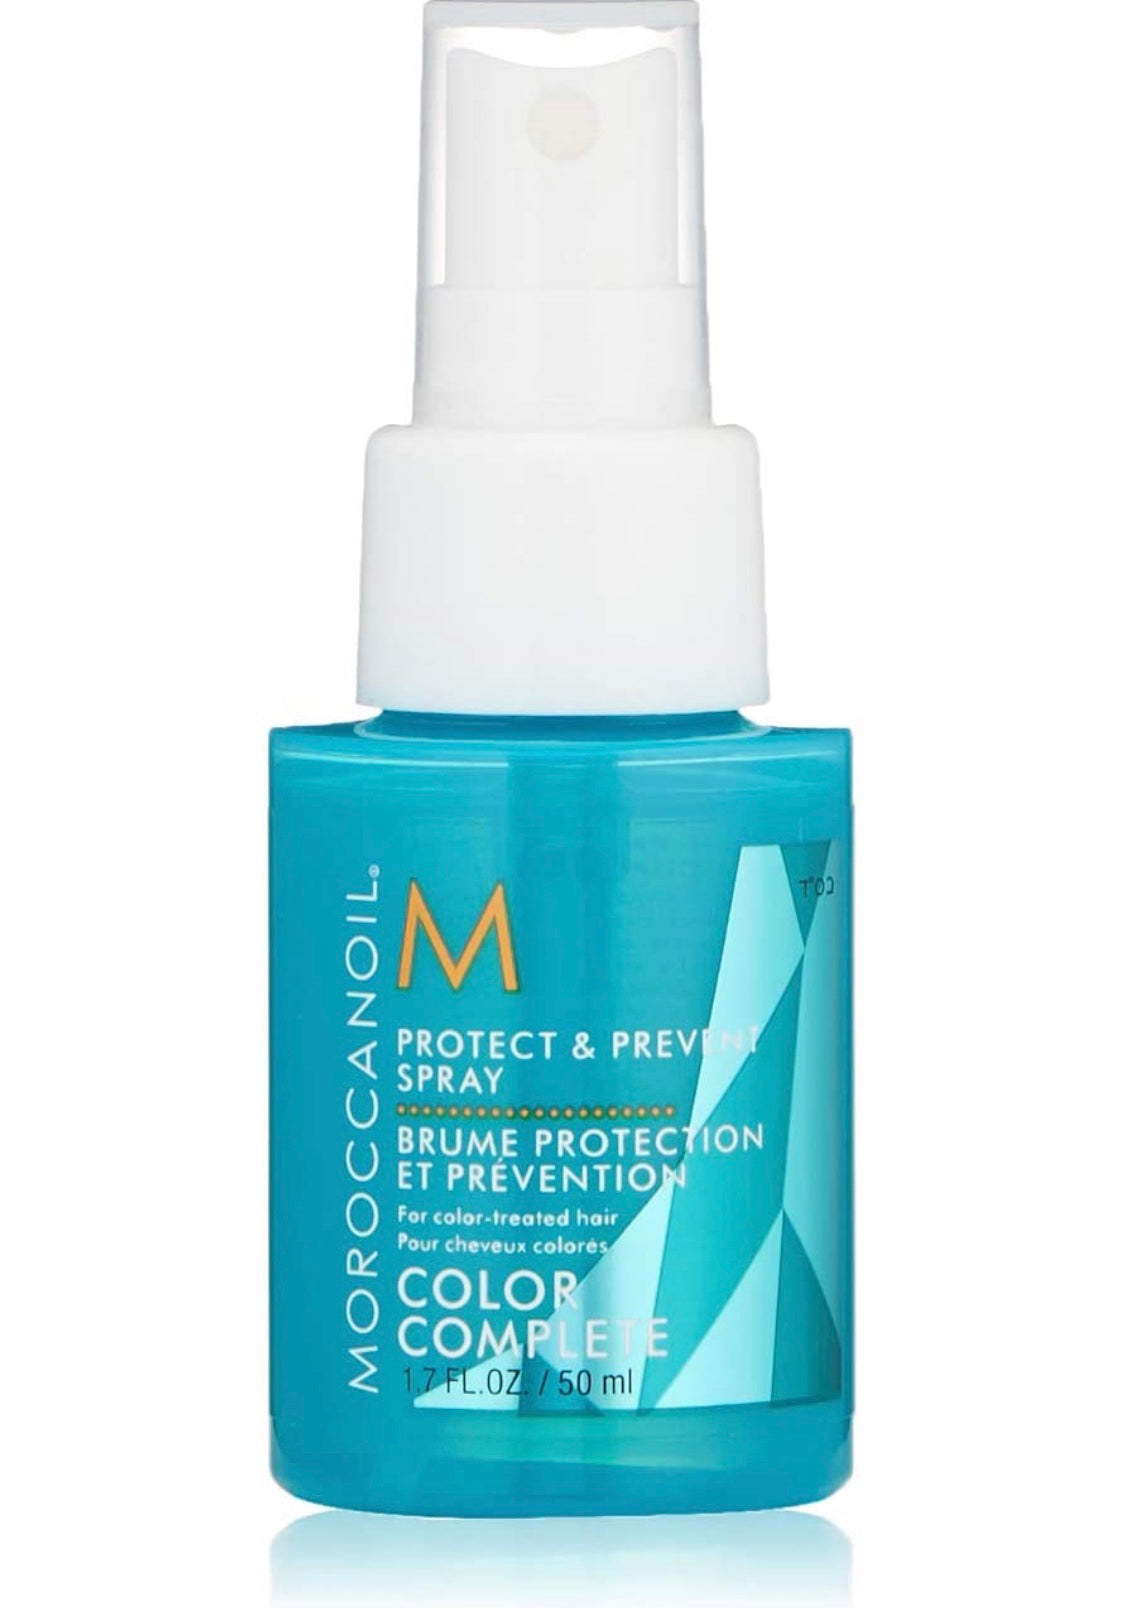 Moroccanoil - Protect & prevent spray Color complete 1.7 fl. oz./ 50 ml